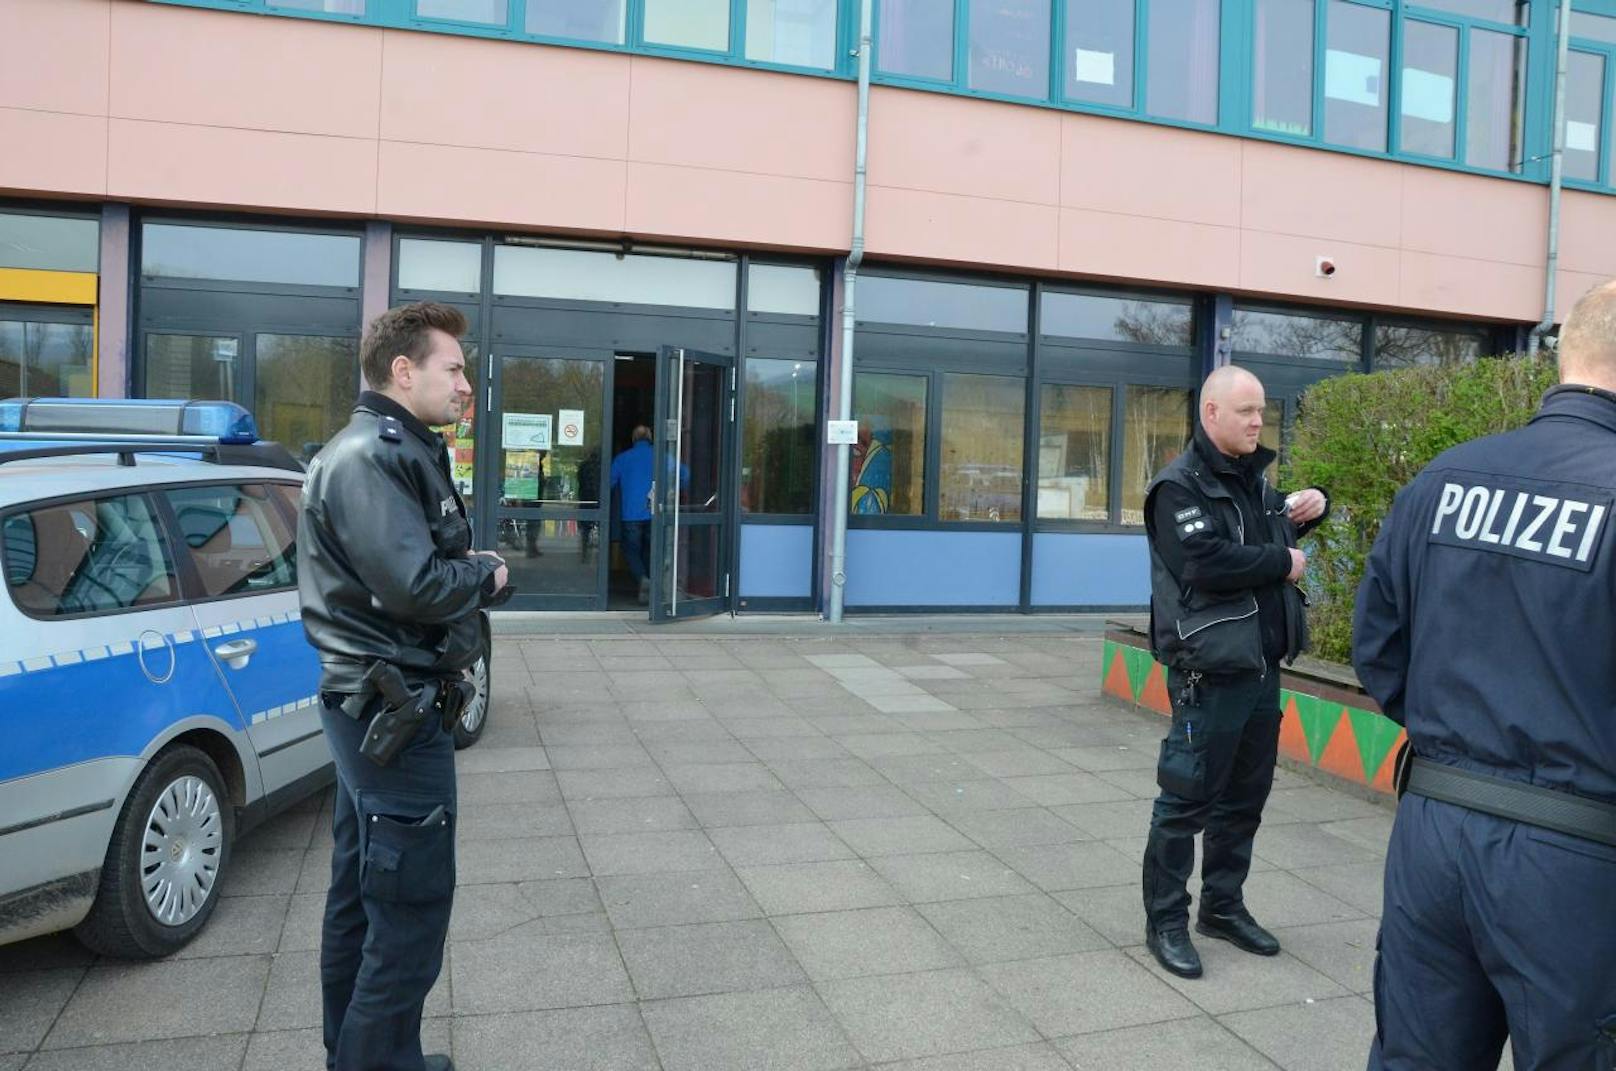 Polizeibeamte beim Einsatz in der Schule in Uslar bei Göttingen.